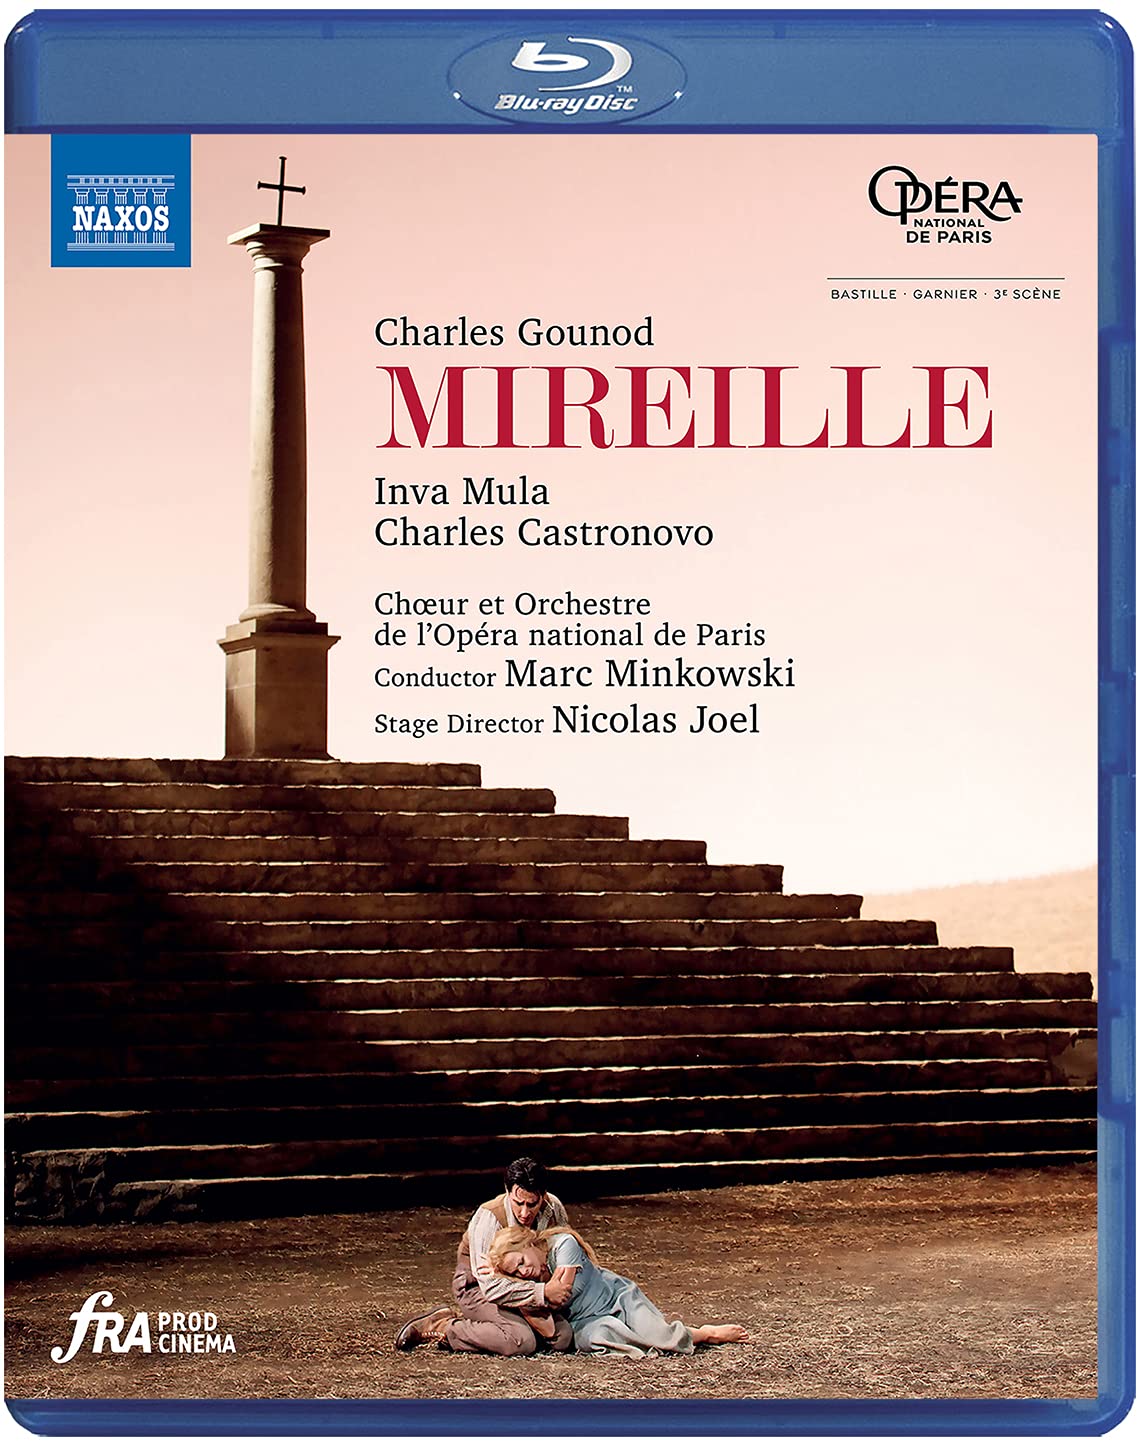 Music Blu-Ray Charles Gounod - Mireille NUOVO SIGILLATO, EDIZIONE DEL 10/05/2021 SUBITO DISPONIBILE